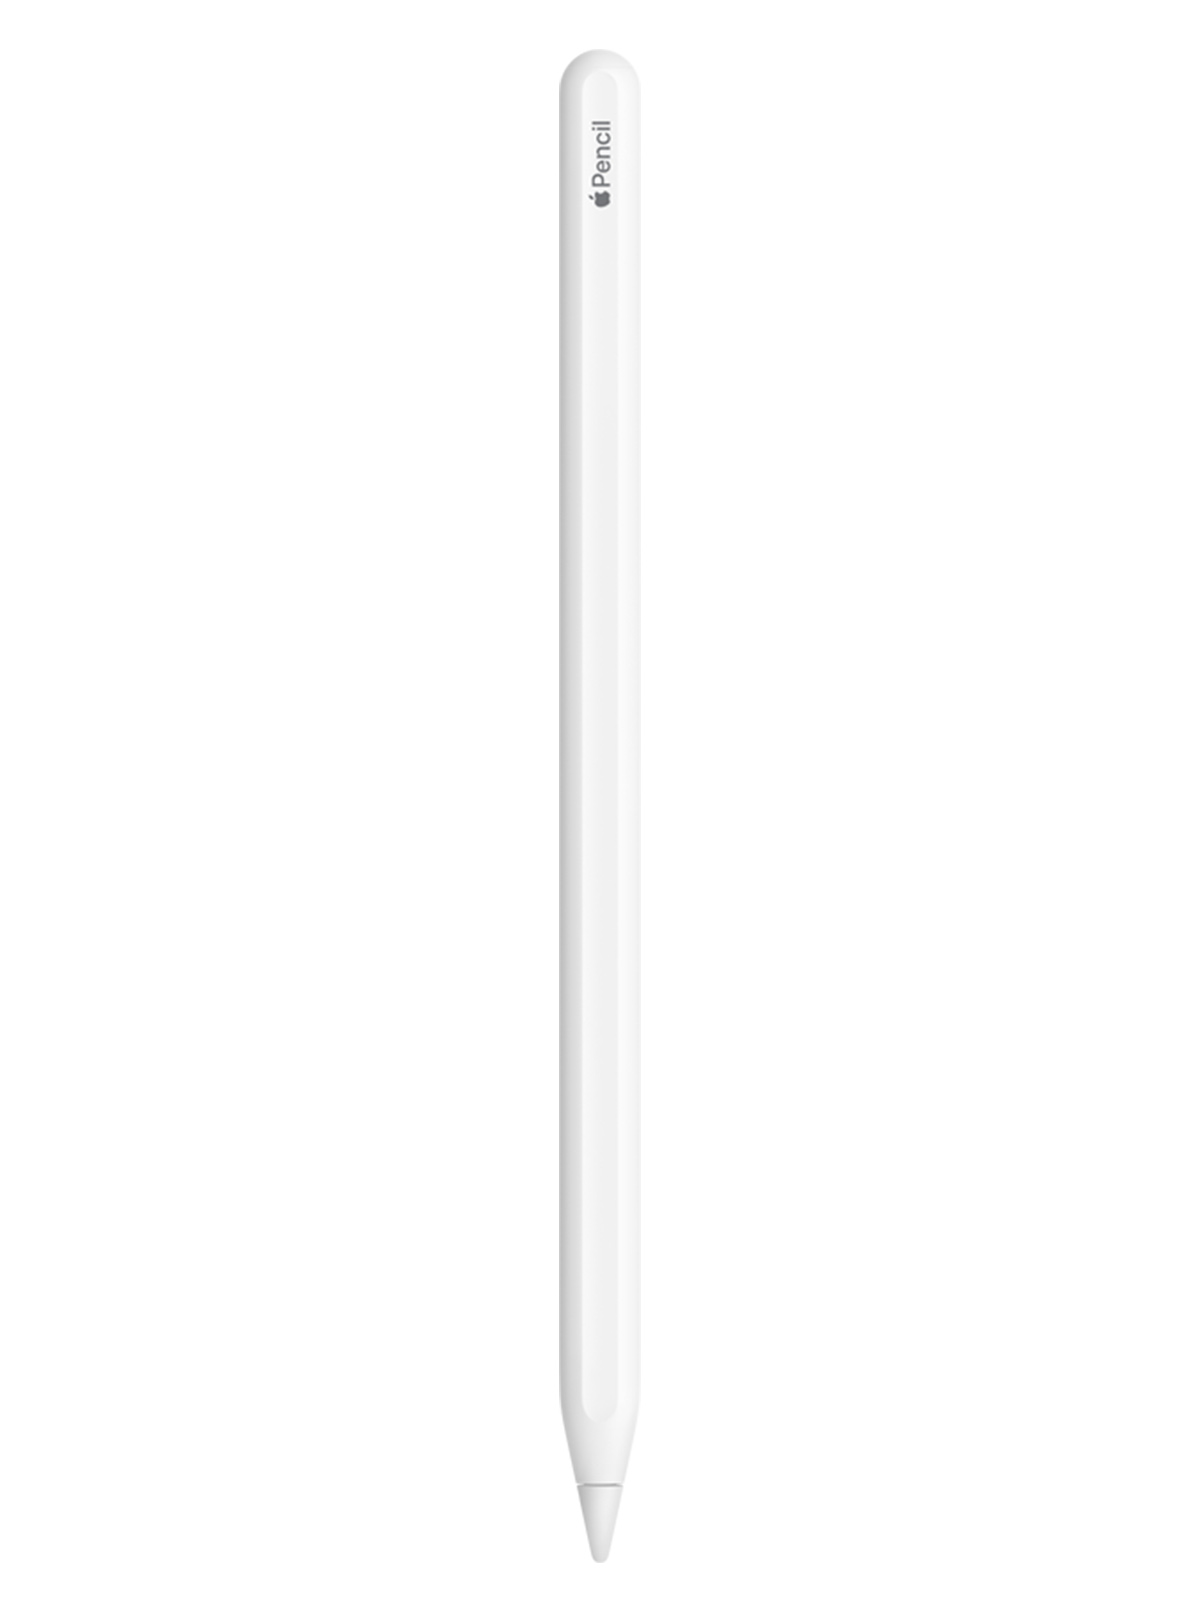 Apple Pencil (2nd Generation) - White (MU8F2ZM/A) #A38 | ElekDirect